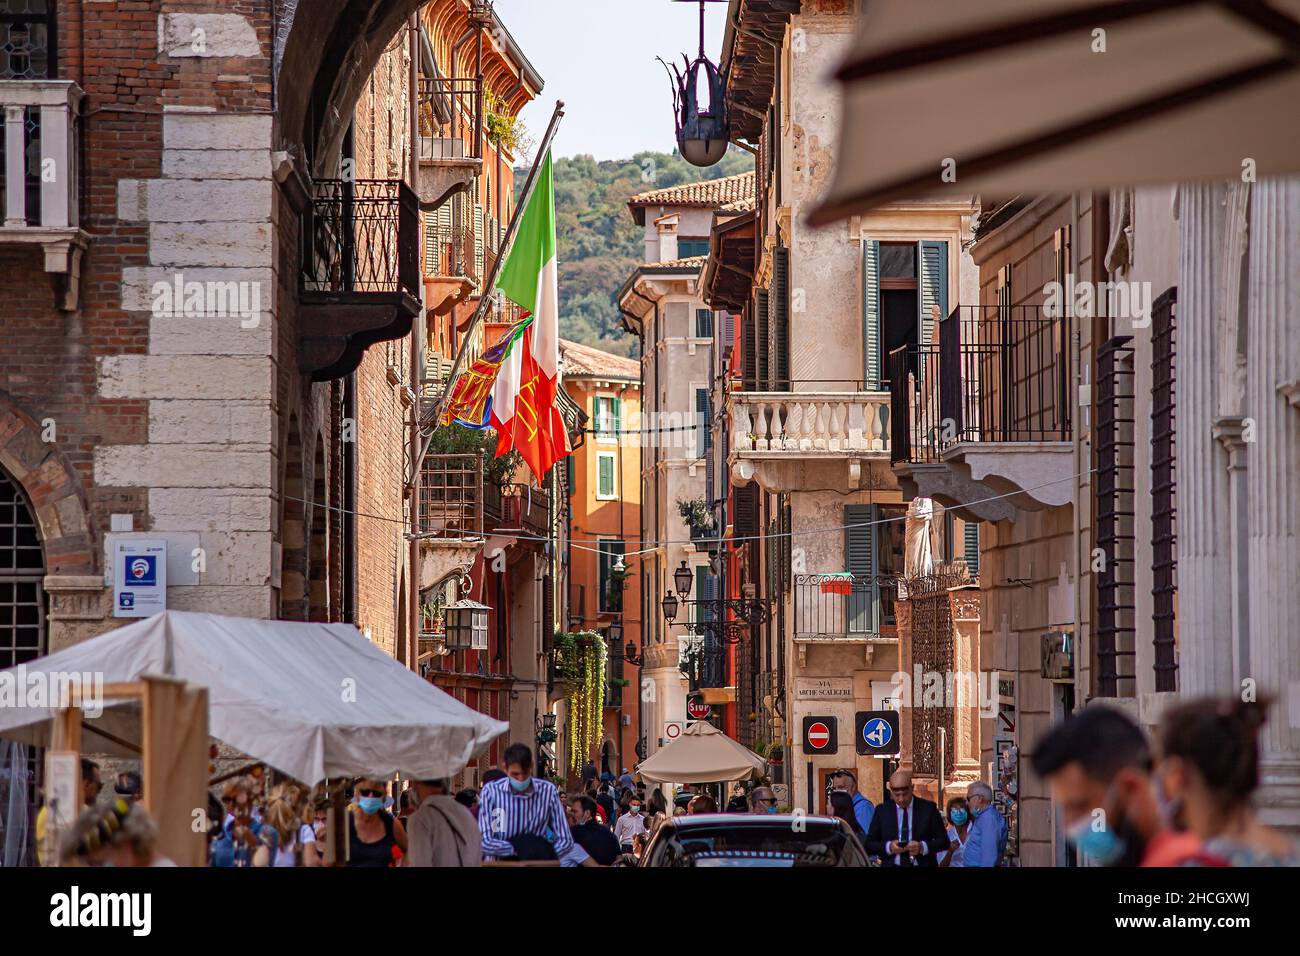 VERONA, ITALIA 10 DE SEPTIEMBRE de 2020: Calle en Verona llena de gente Foto de stock